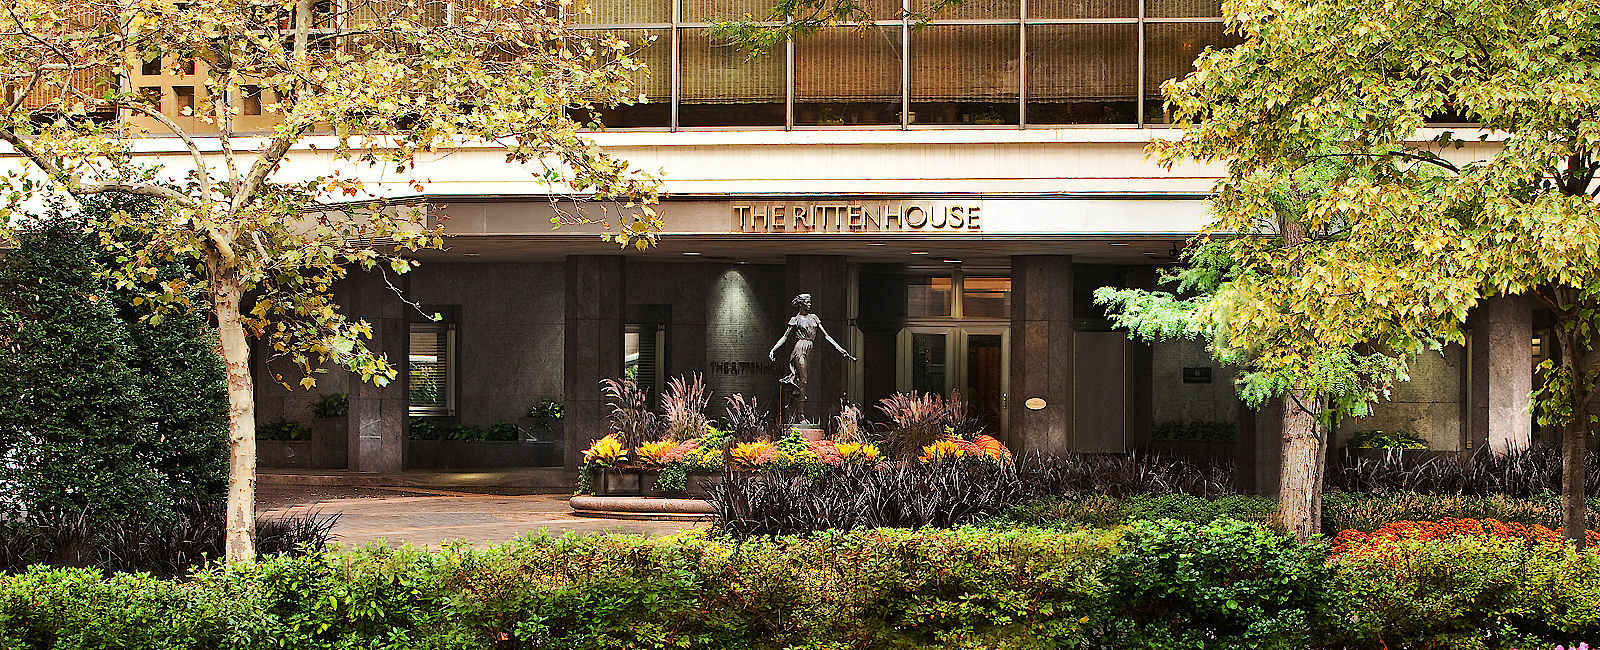 HOTEL TIPPS
 The Rittenhouse 
 Eines der besten Luxushotels der Welt 